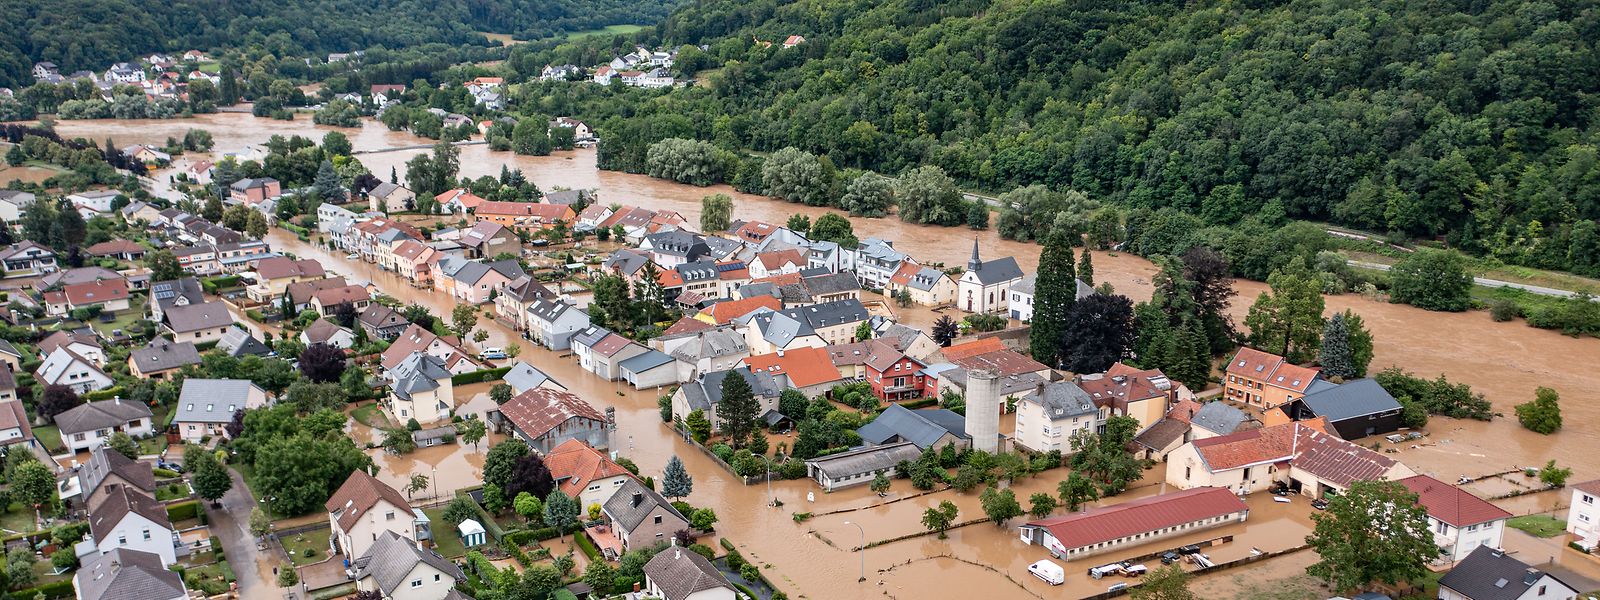 In Steinheim brachten sowohl die Sauer als auch die Prüm die Fluten mit sich. 90 Prozent des Dorfes standen unter Wasser. 